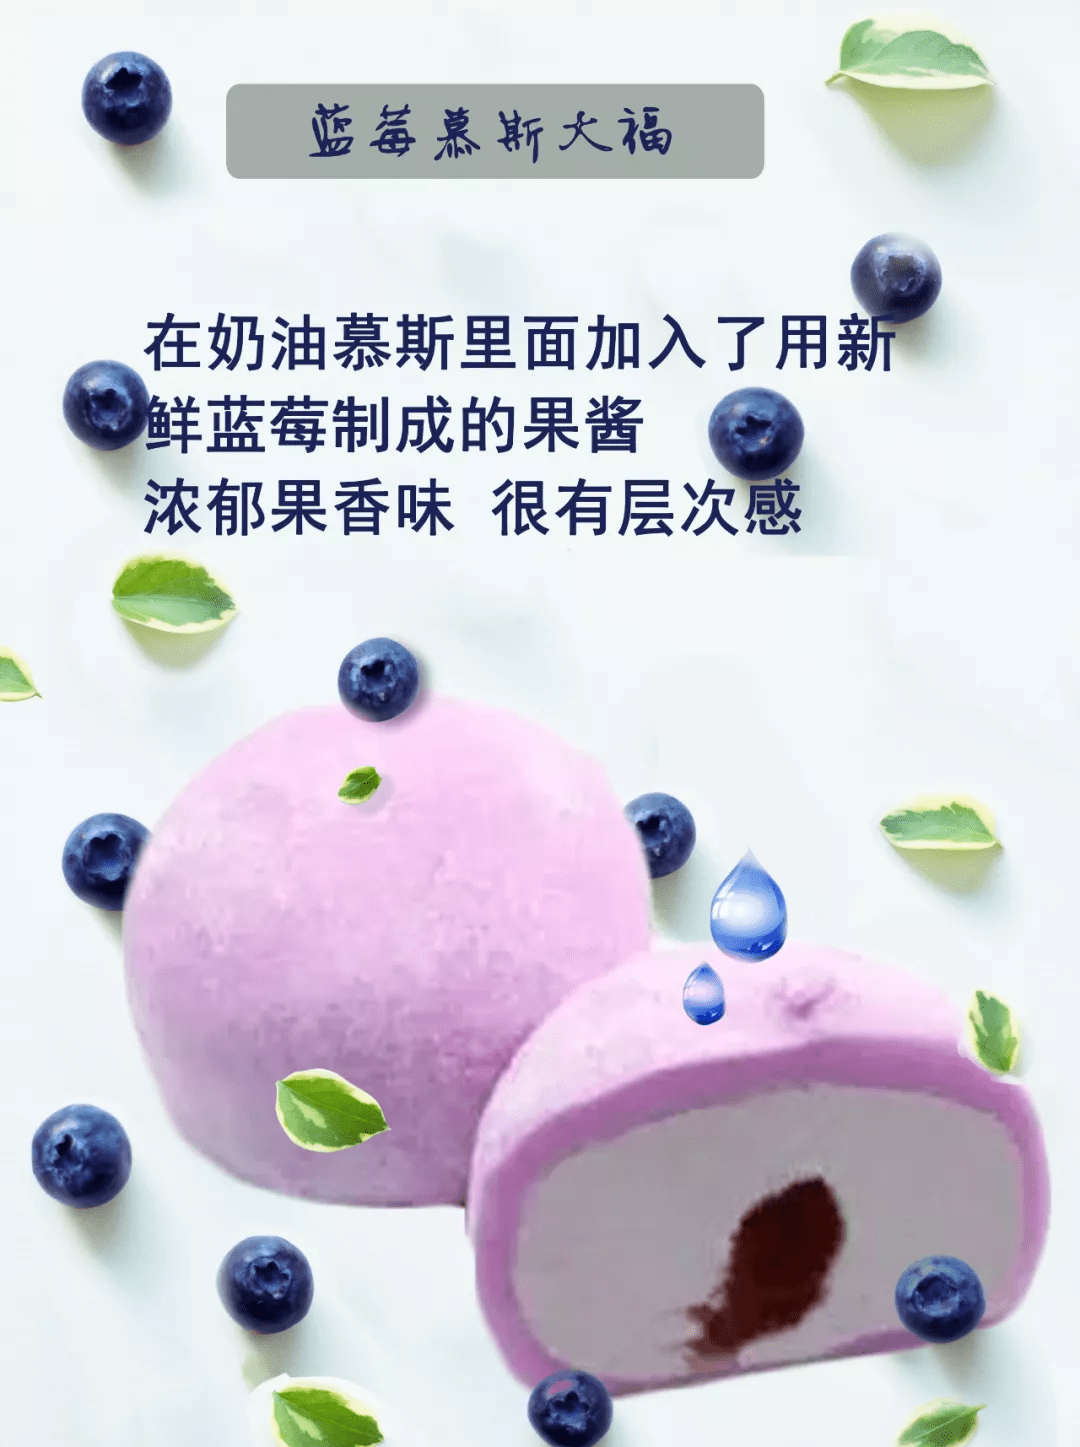 蓝莓慕斯大福 在奶油慕斯里面加入了 用新鲜蓝莓制成的果酱 浓郁果